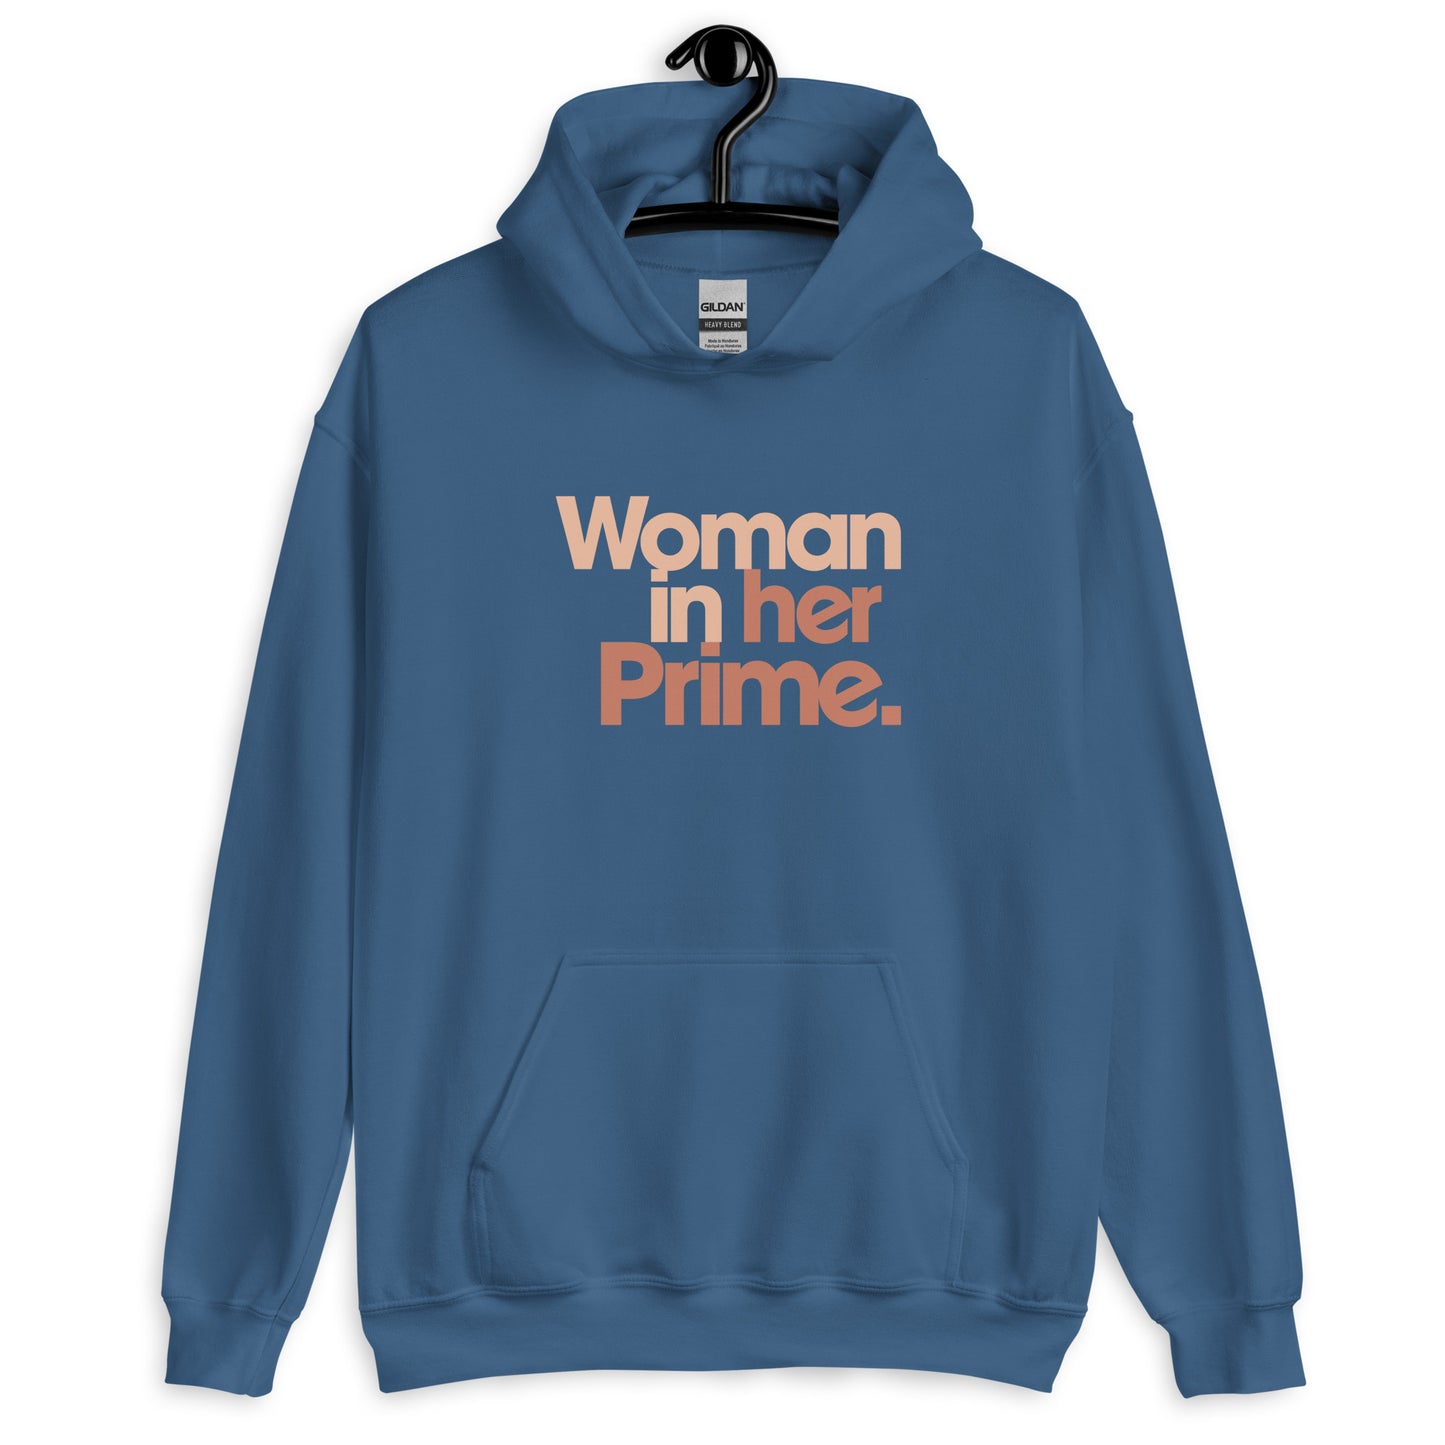 Woman in her Prime - Hooded Sweatshirt